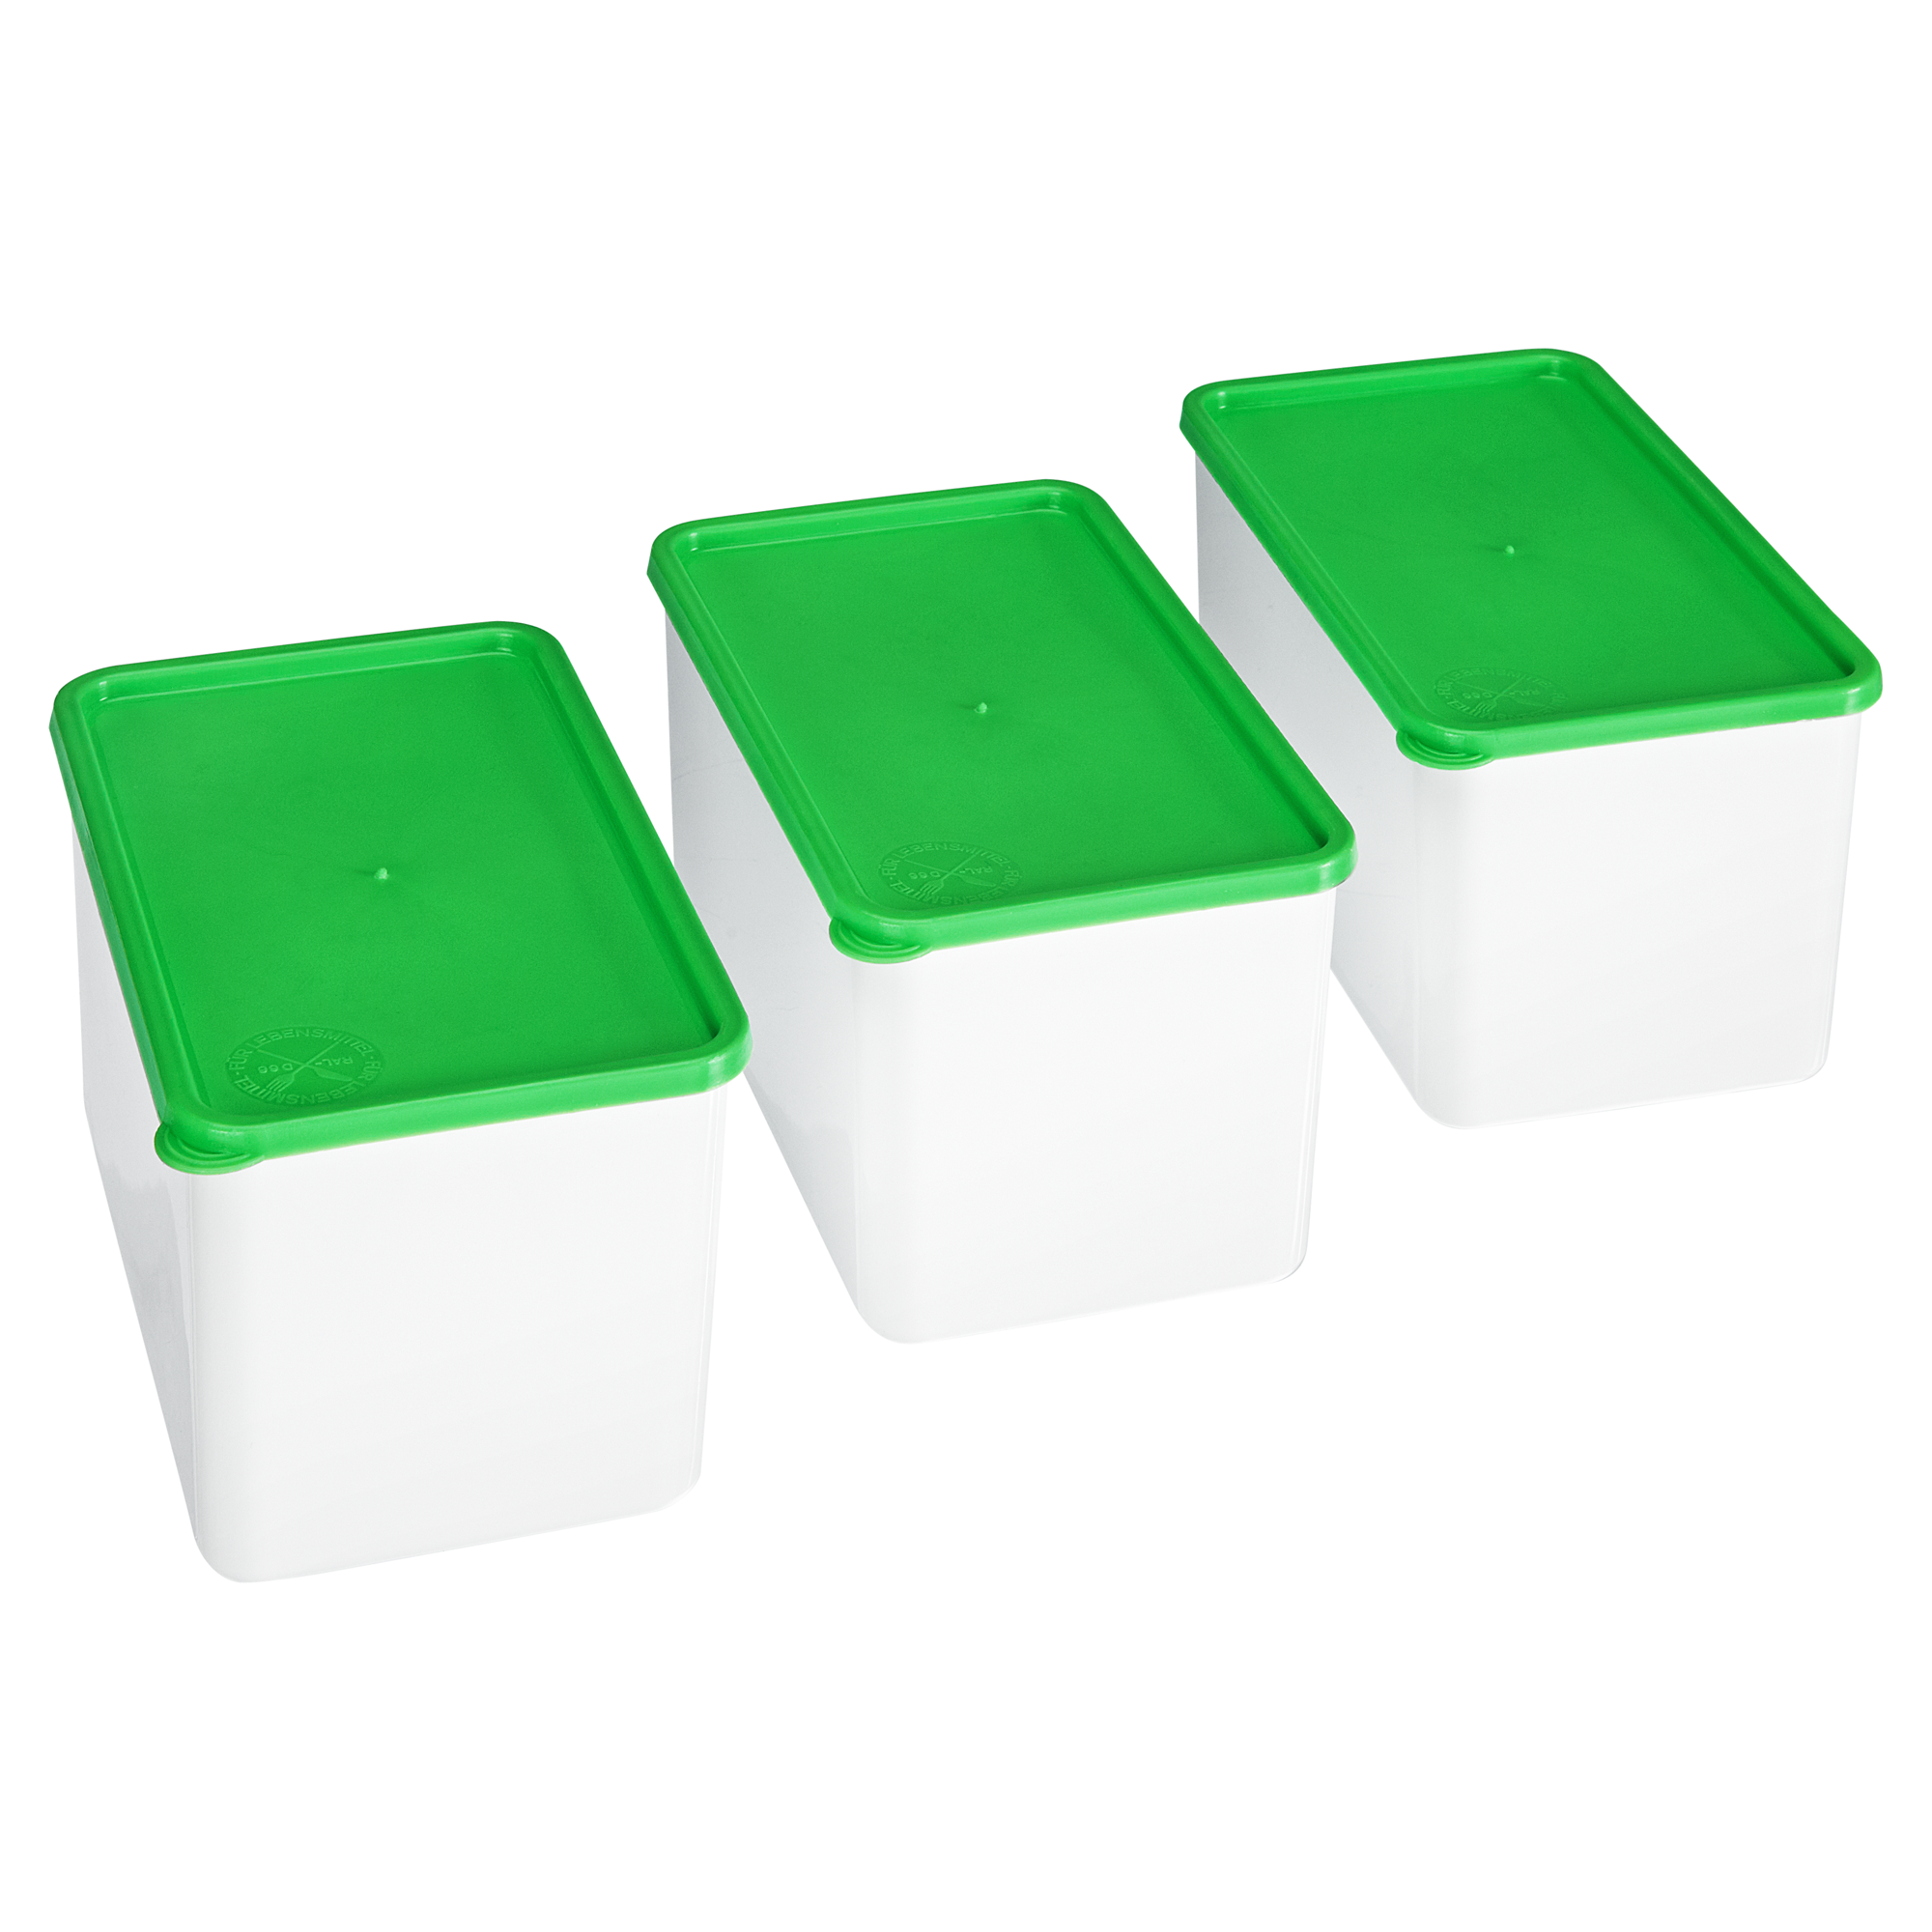 Tiefkühldosen grün/weiß 17 x 10 x 15 cm, 3 Stück + product picture